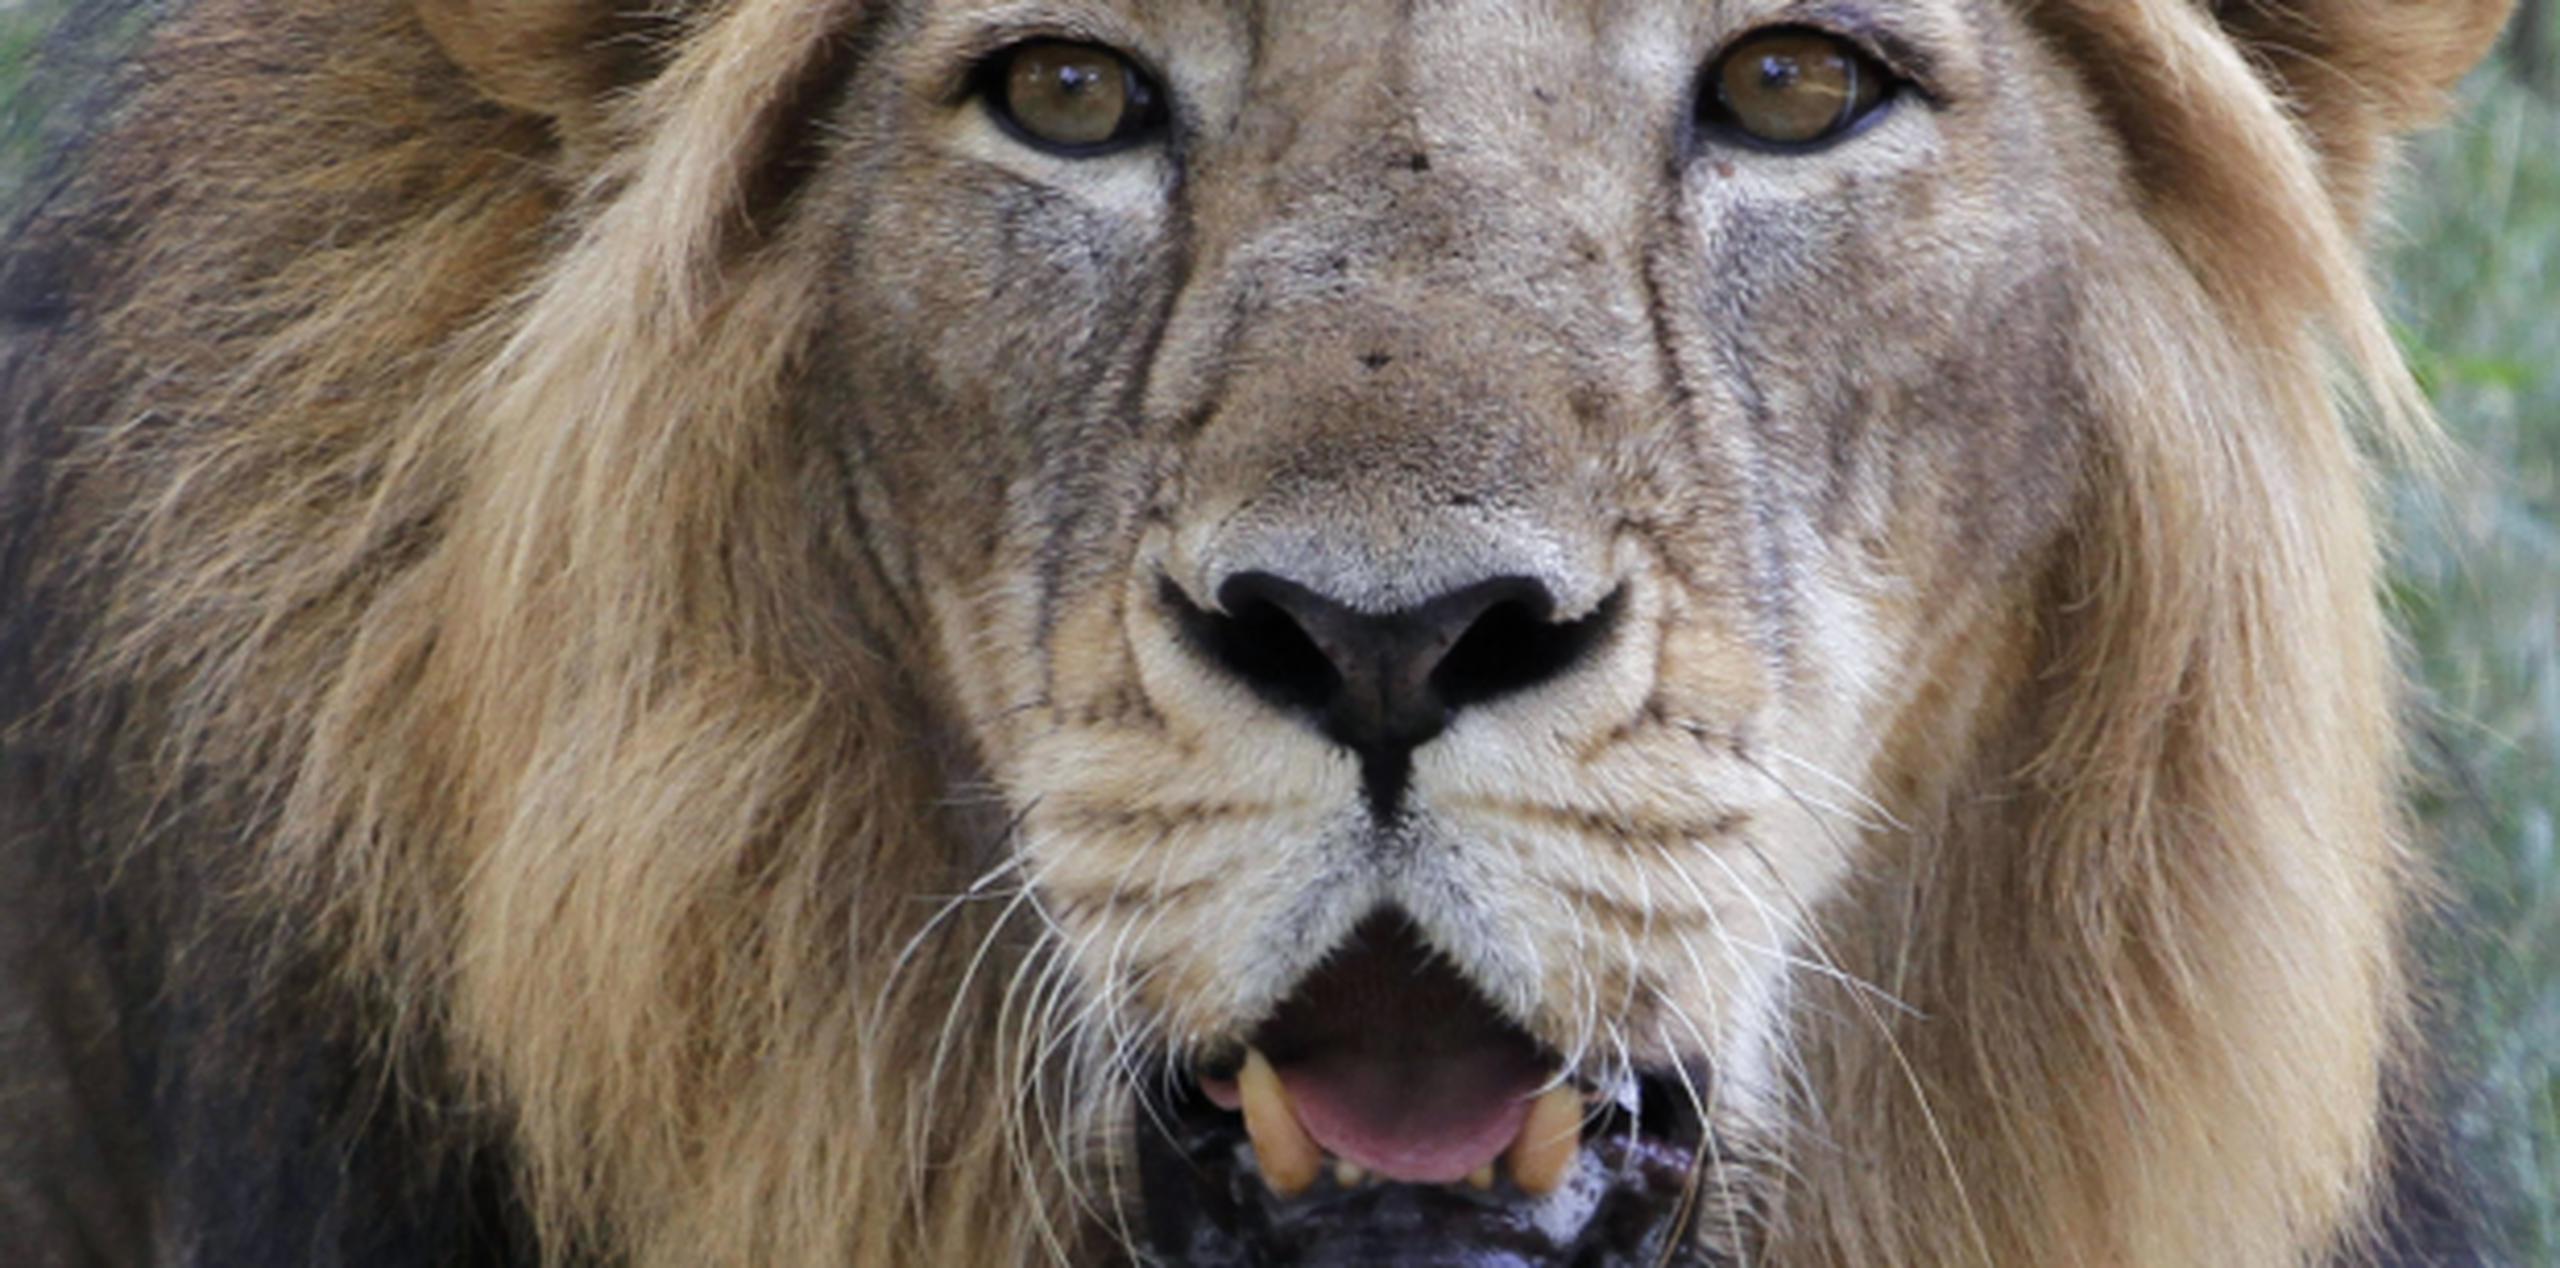 El león no tenía pelo y fue decapitado. Los cazadores trataron de destruir el collar del animal, el cual tiene dentro un dispositivo de rastreo. (Archivo)